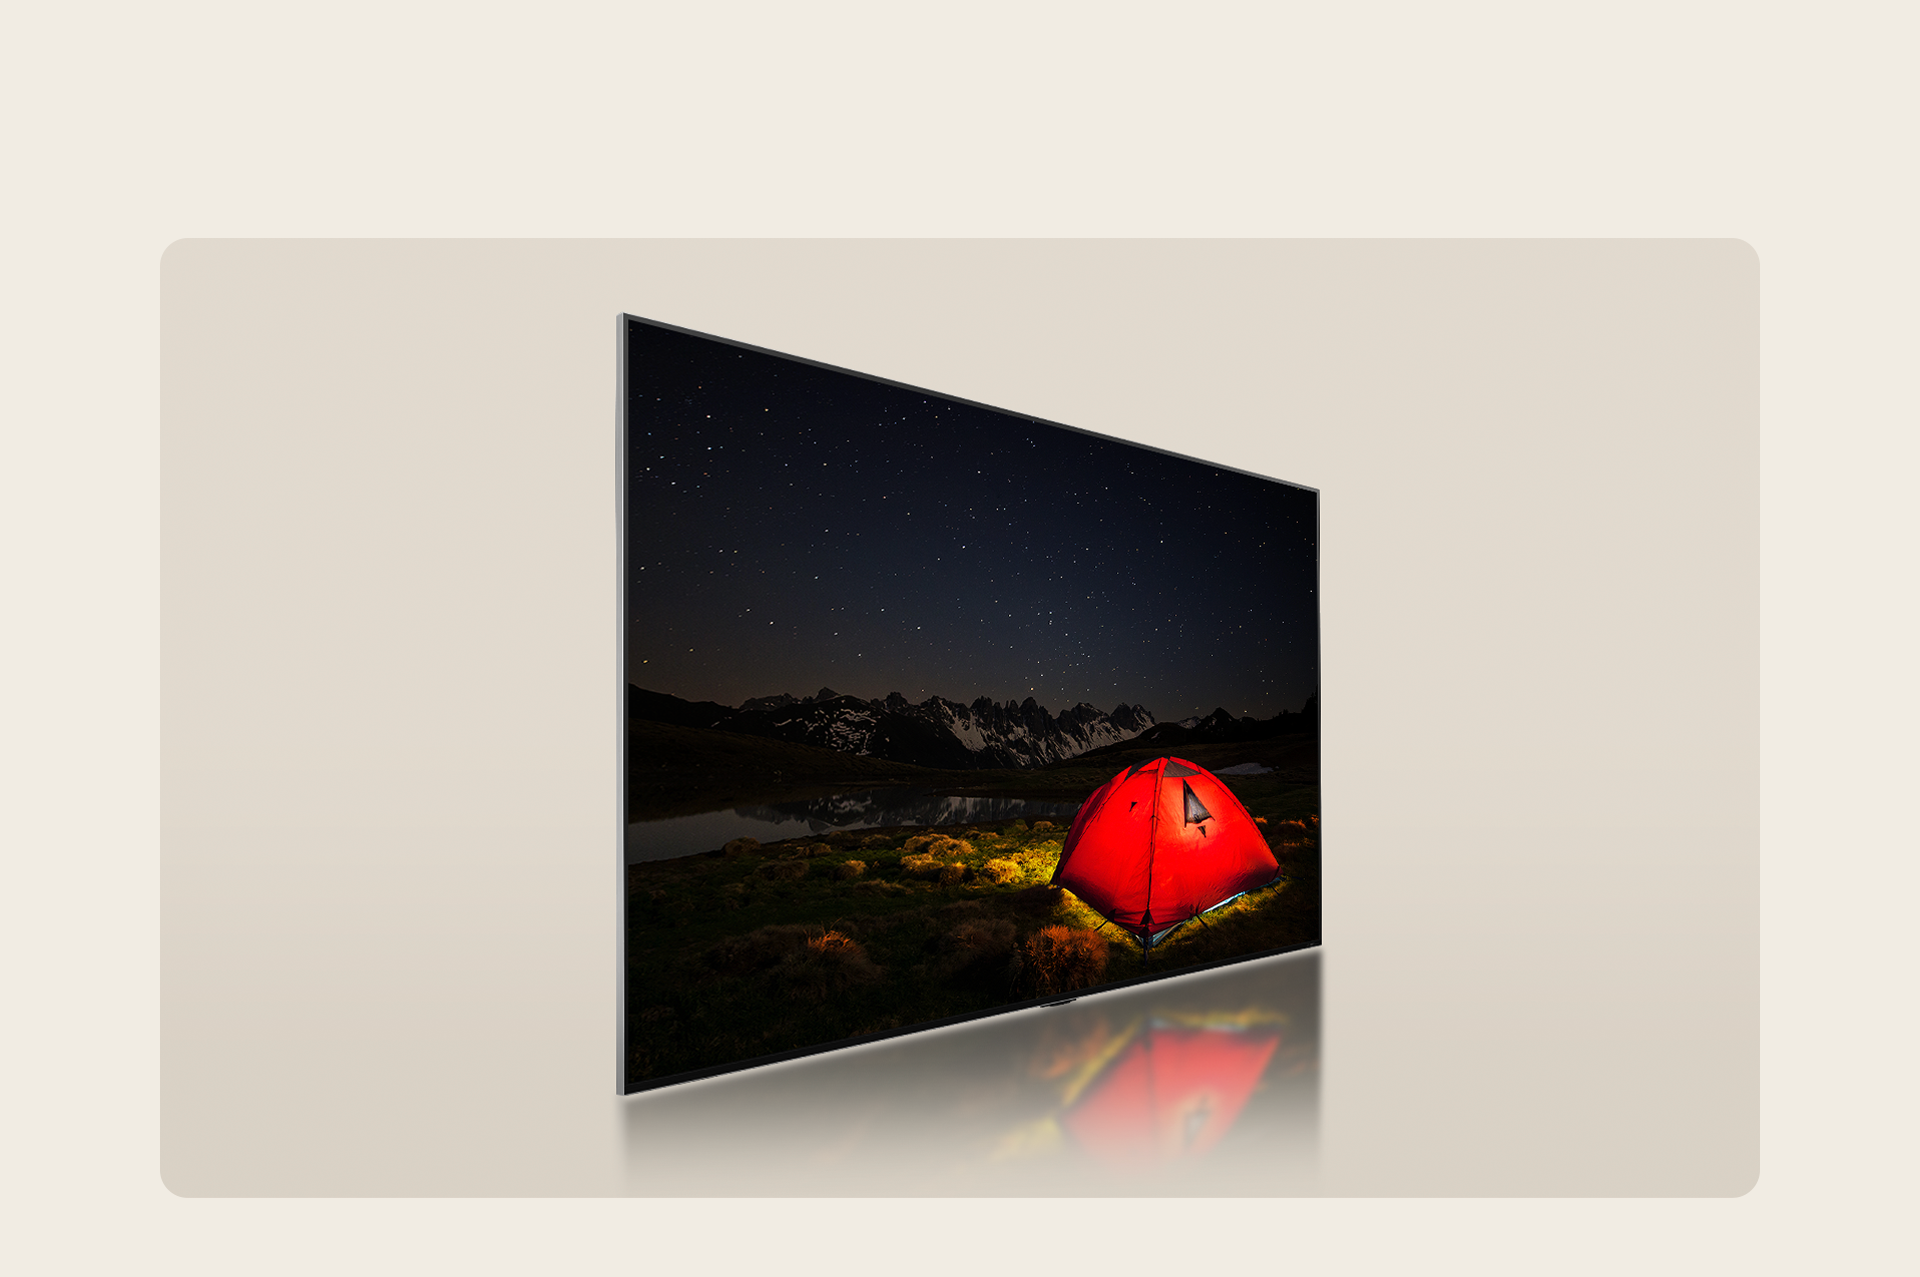 TV LG exibindo uma cena de acampamento noturno com uma tenda vermelha brilhante. Mostrando cores vivas e detalhes do cenário